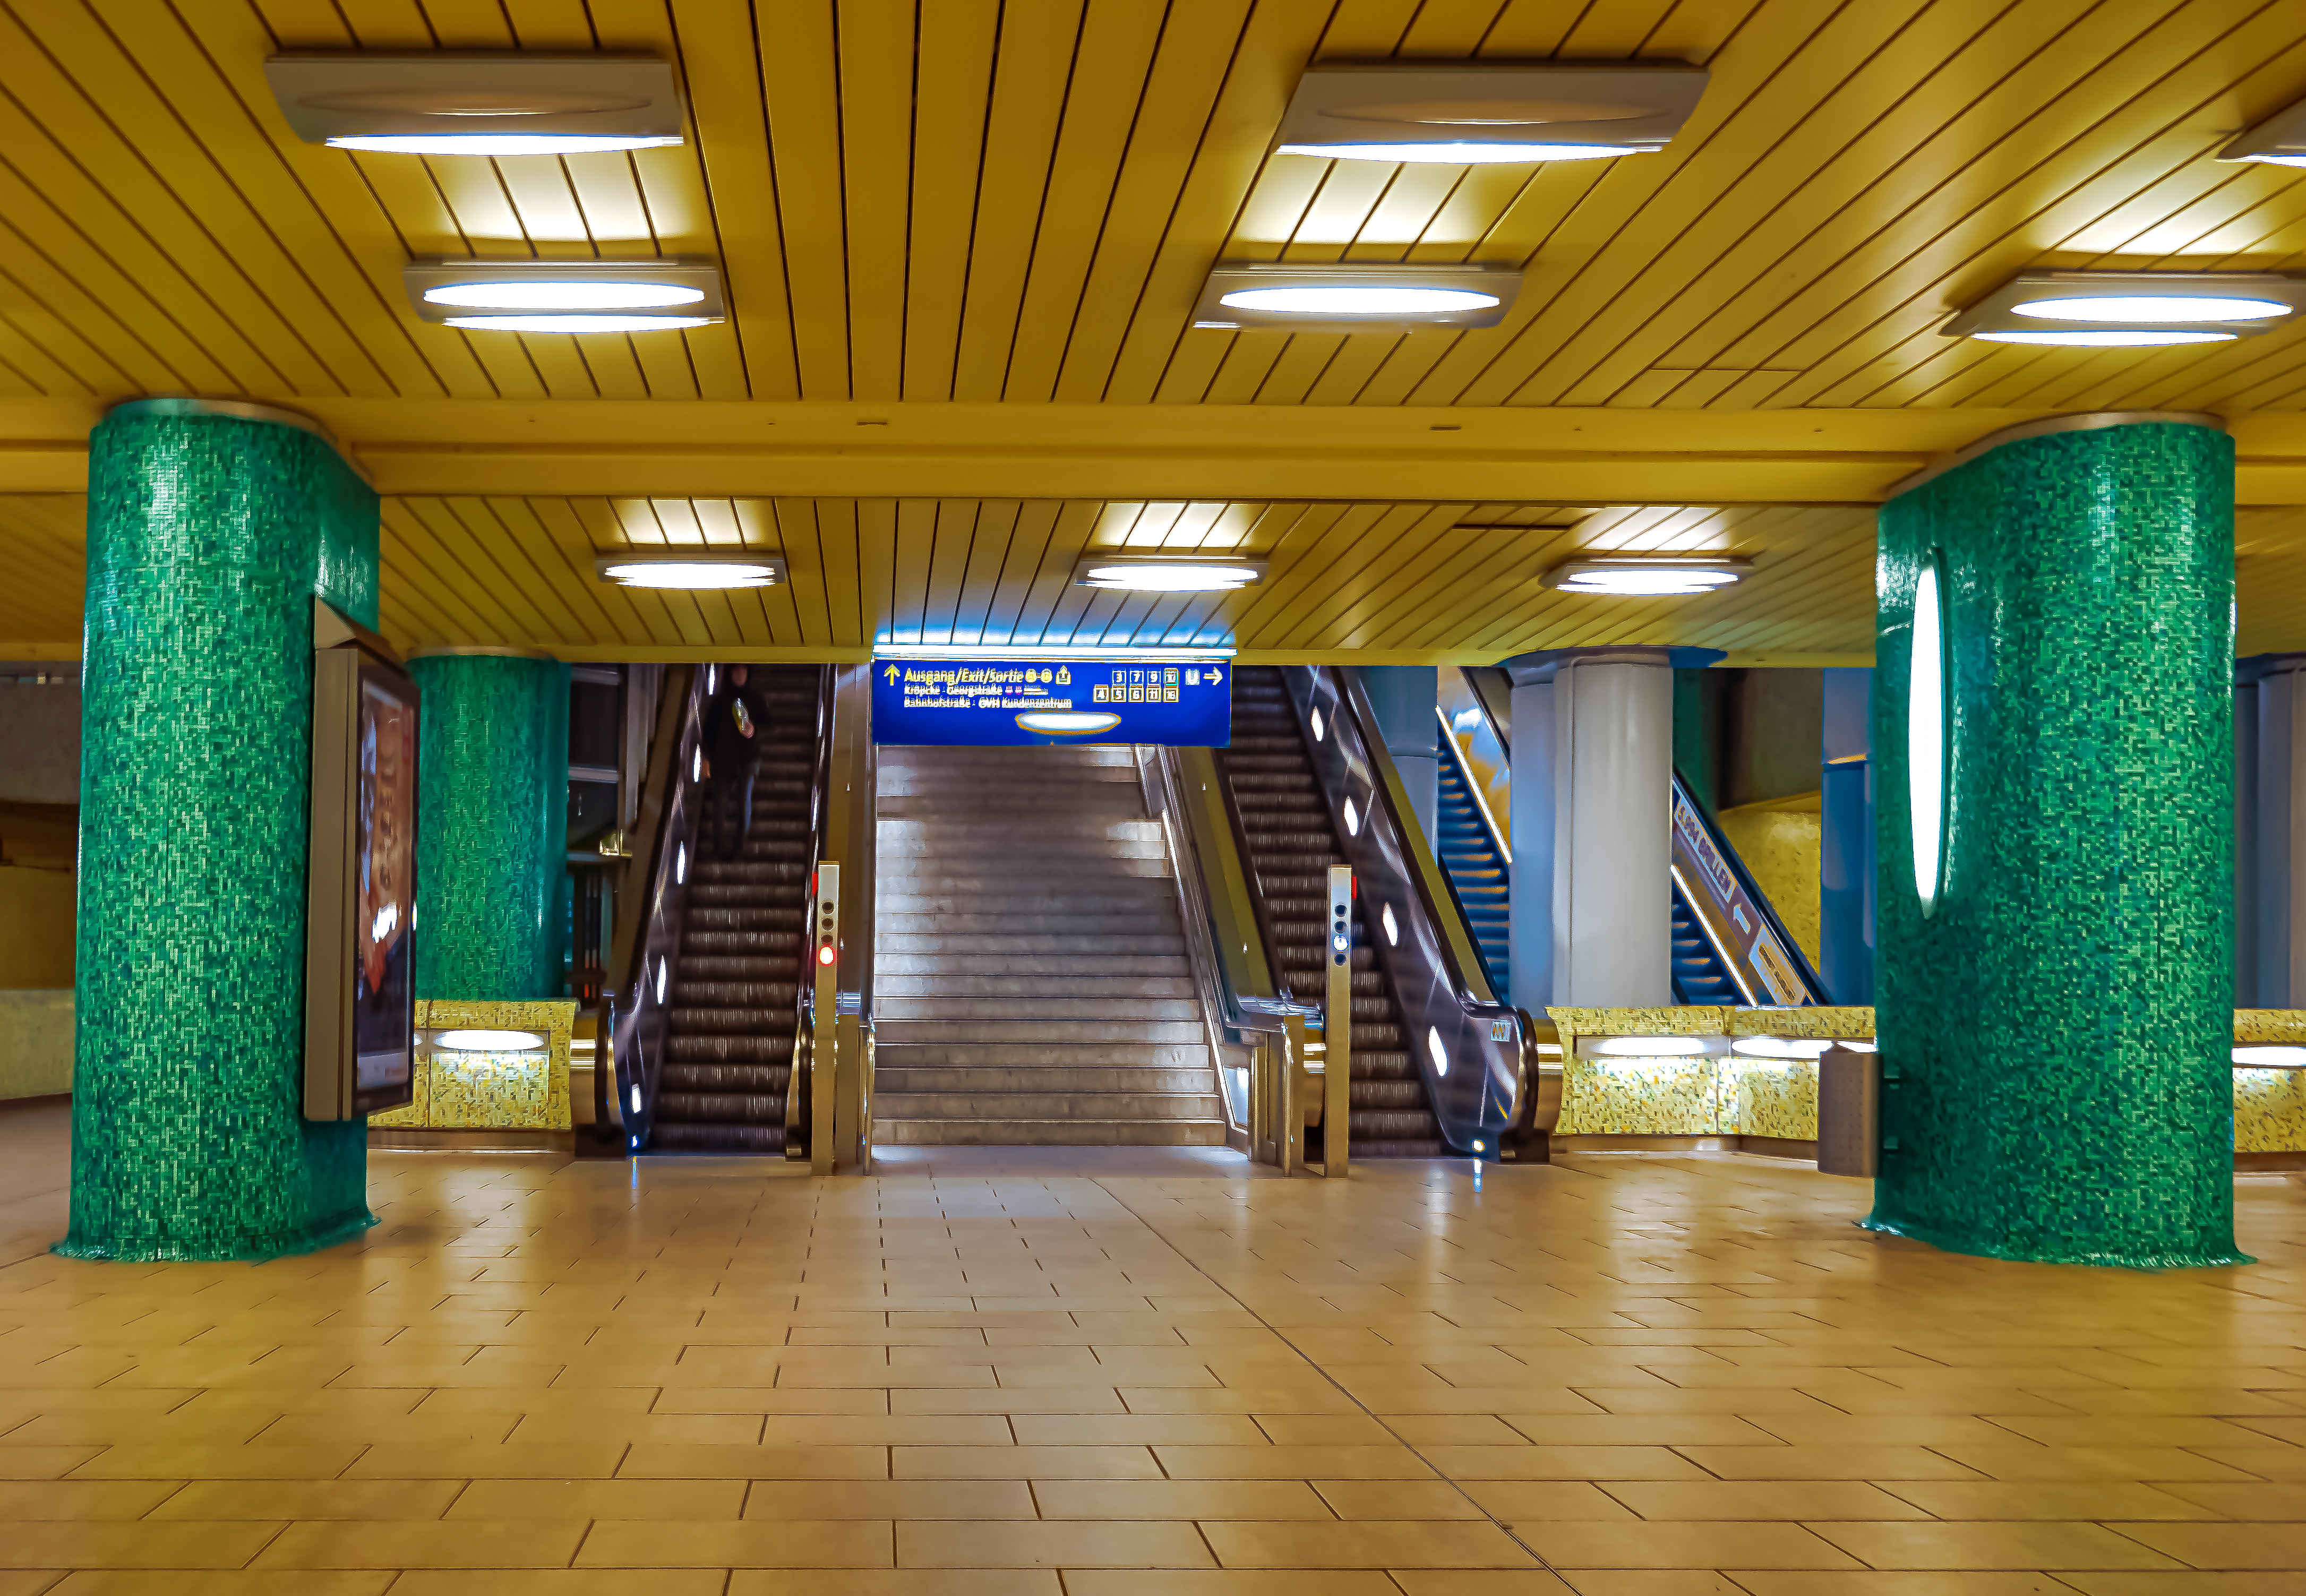 U-Bahnstation Kröpcke